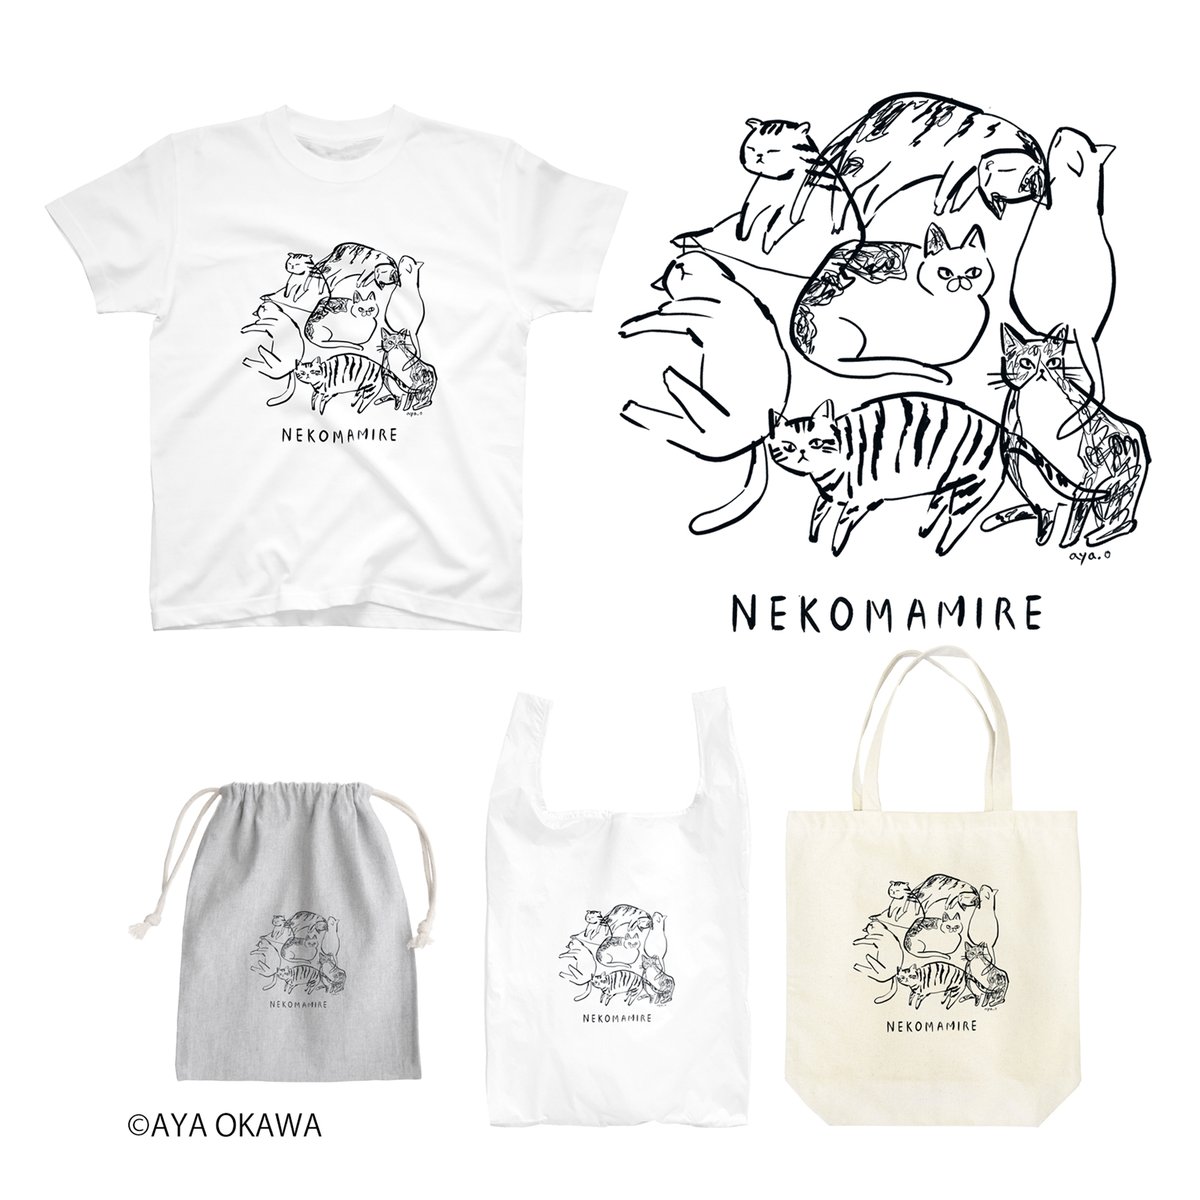 久しぶりにSUZURIに新作をupしました!「INUMAMIRE」「NEKOMAMIRE」シリーズです。TシャツはブラックVer.とダークグリーンVer.があります。犬まみれ猫まみれになりたいー!
ただいまセール中です⭐︎
AYA OKAWA online shop→ https://t.co/ly3MTidD62
#SUZURIのTシャツセール 